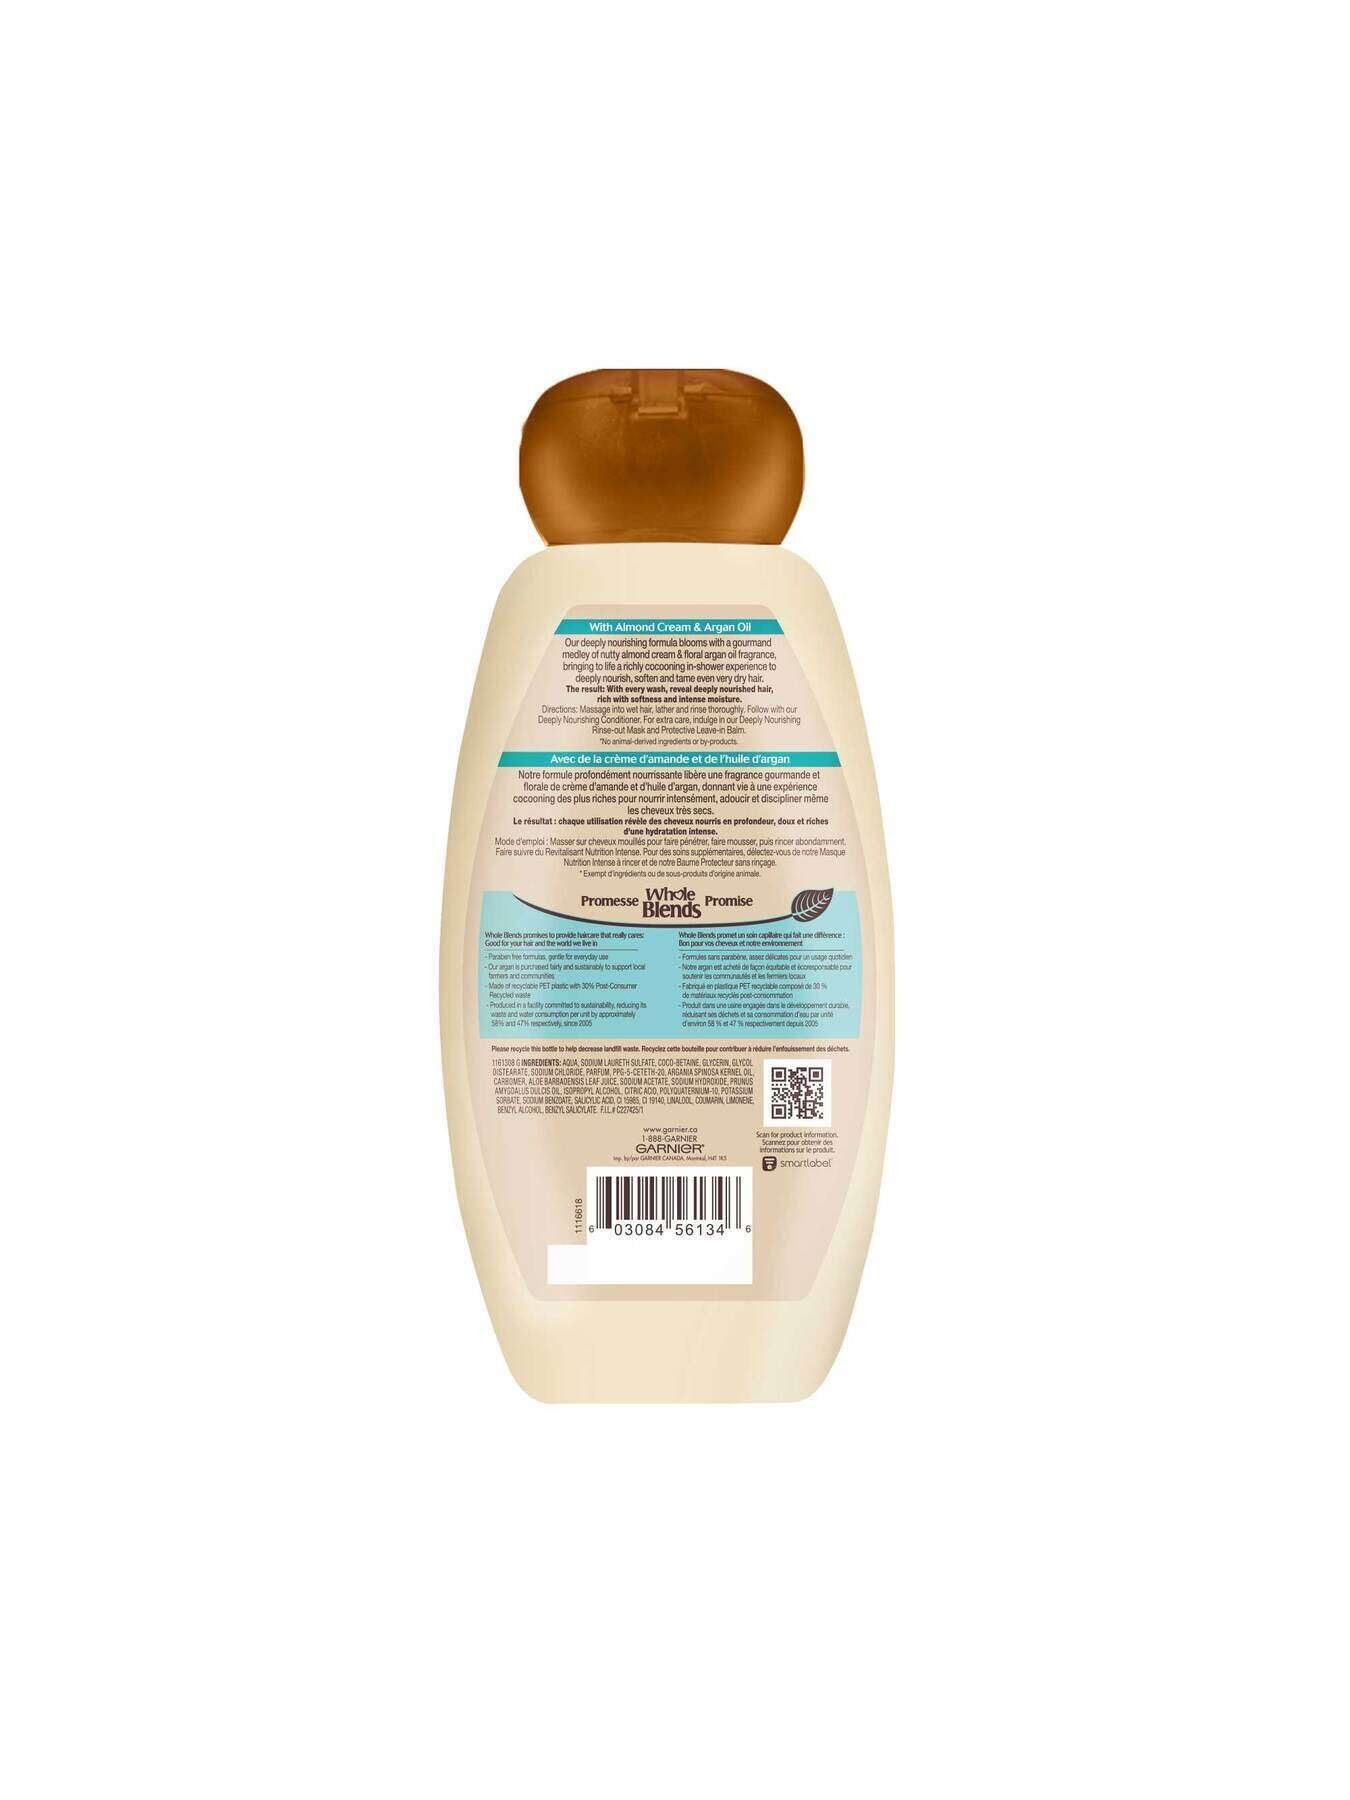 garnier shampoo whole blends almond argan riches shampoo 650 ml 603084561346 t2